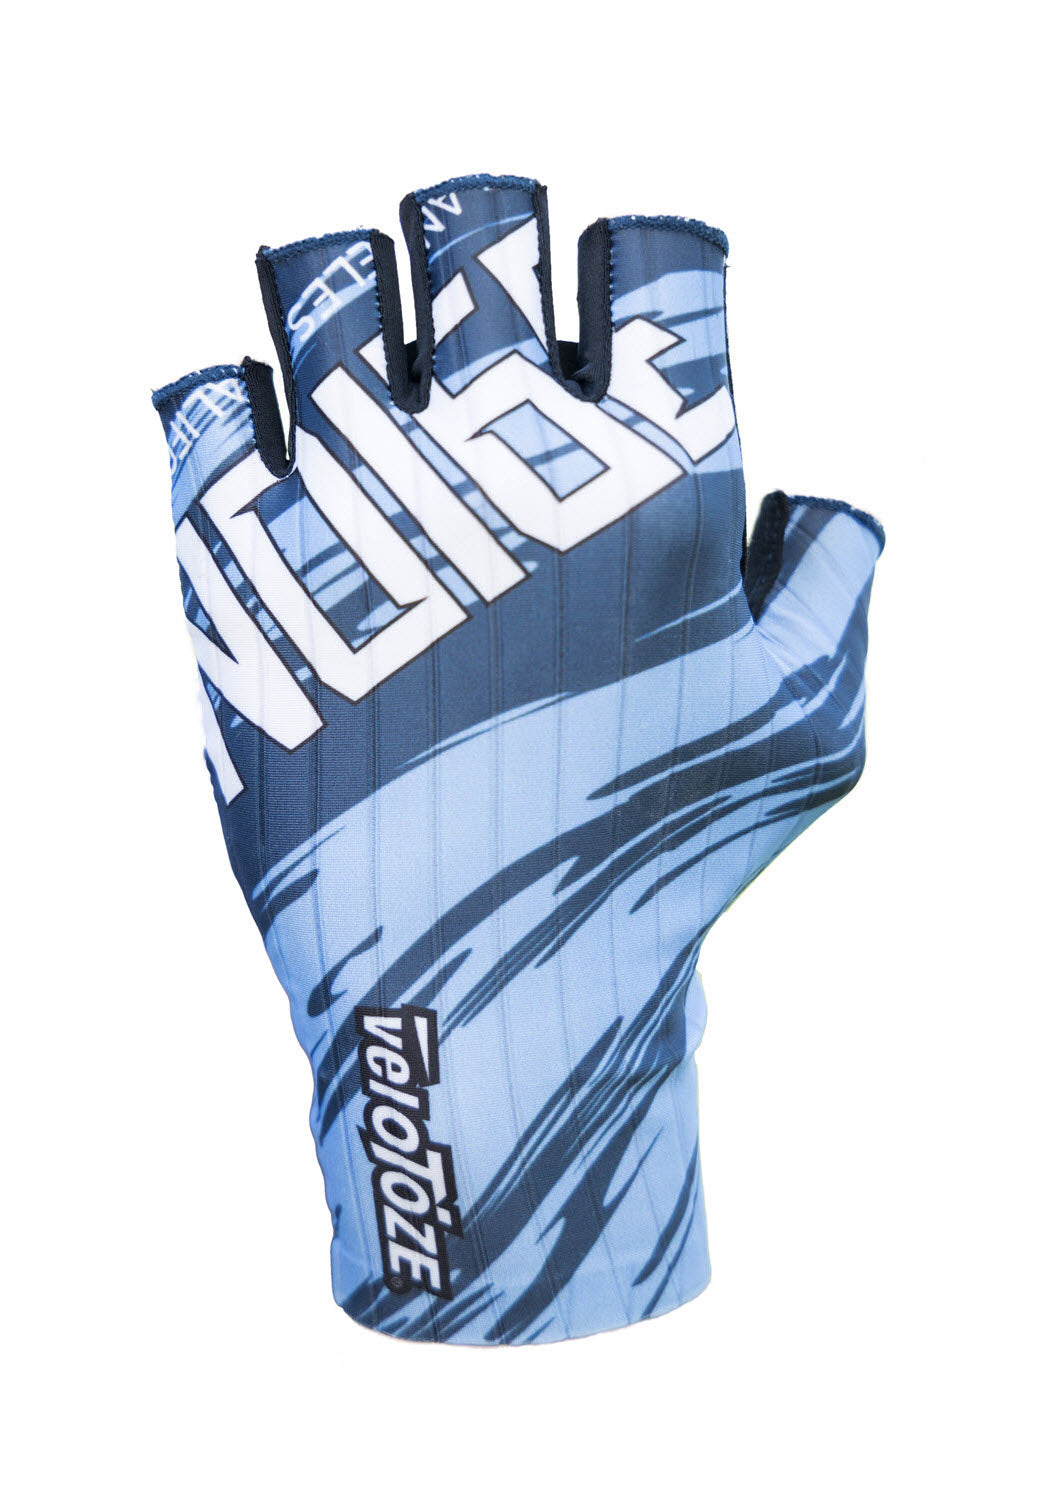 veloToze Aero Gloves